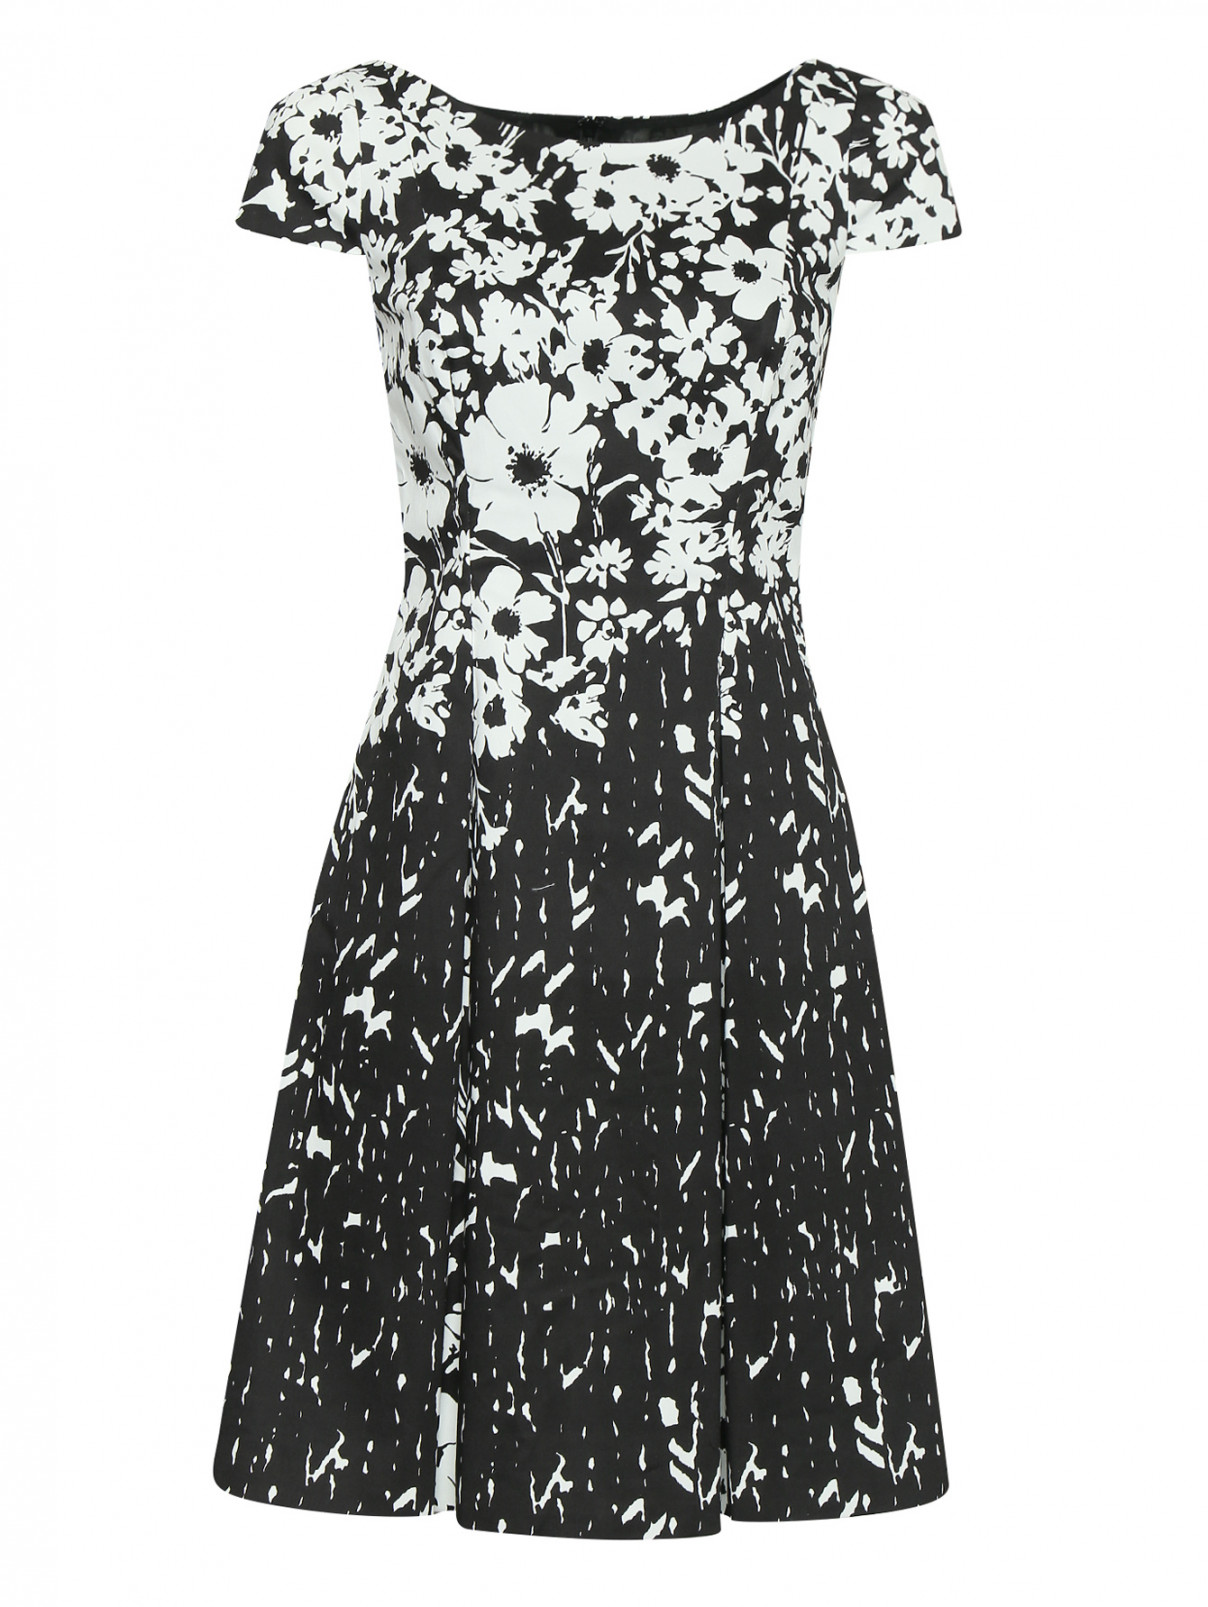 Платье из хлопка с узором Luisa Spagnoli  –  Общий вид  – Цвет:  Узор